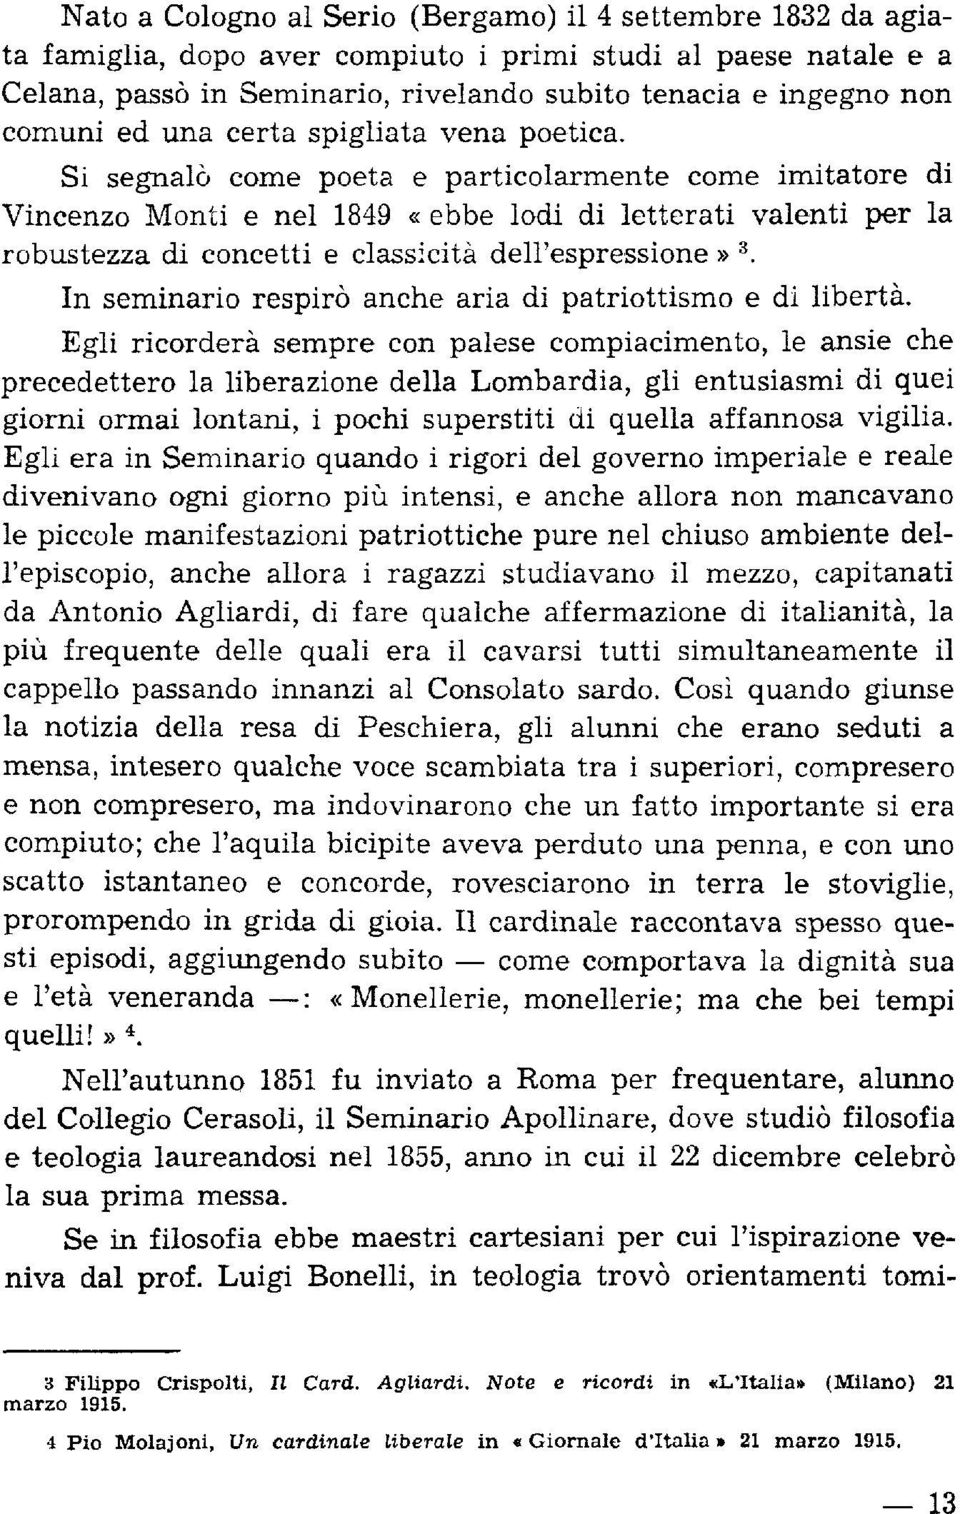 Si segna16 come poeta e particolarmente come imitatore di Vincenzo Monti e nel 1849 «ebbe lodi di letterati valenti per la robustezza di concetti e classicità dell'espressione» 3.